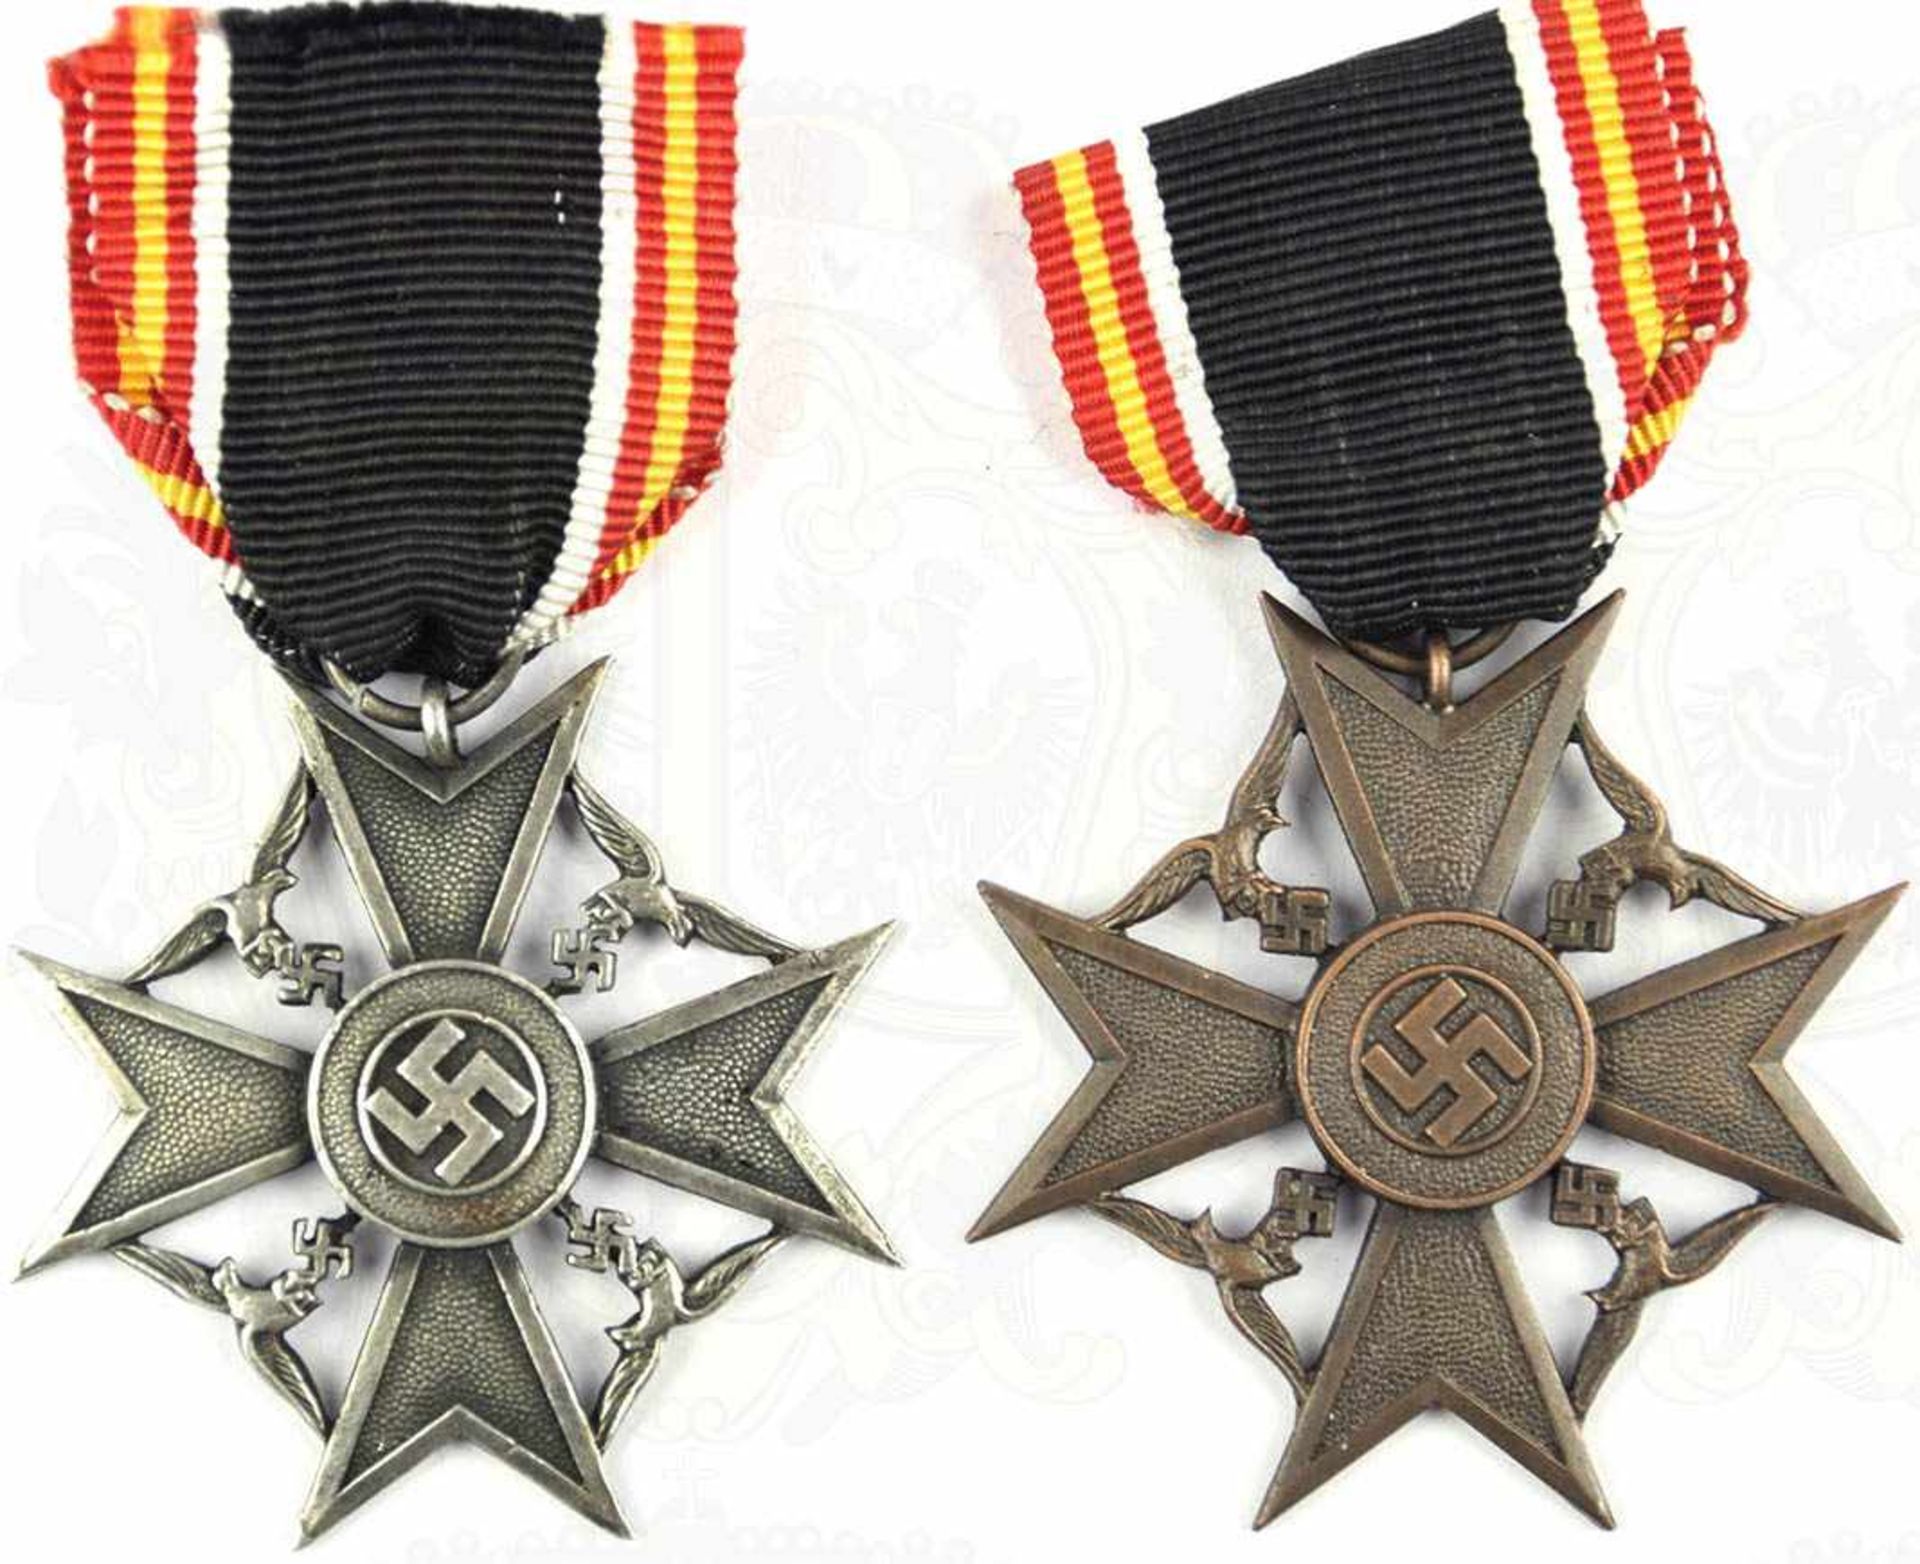 2 SPANIENKREUZE FÜR HINTERBLIEBENE, in Silber u. Bronze, Weißmetall/Buntmetall, 1x bronziert, 1x